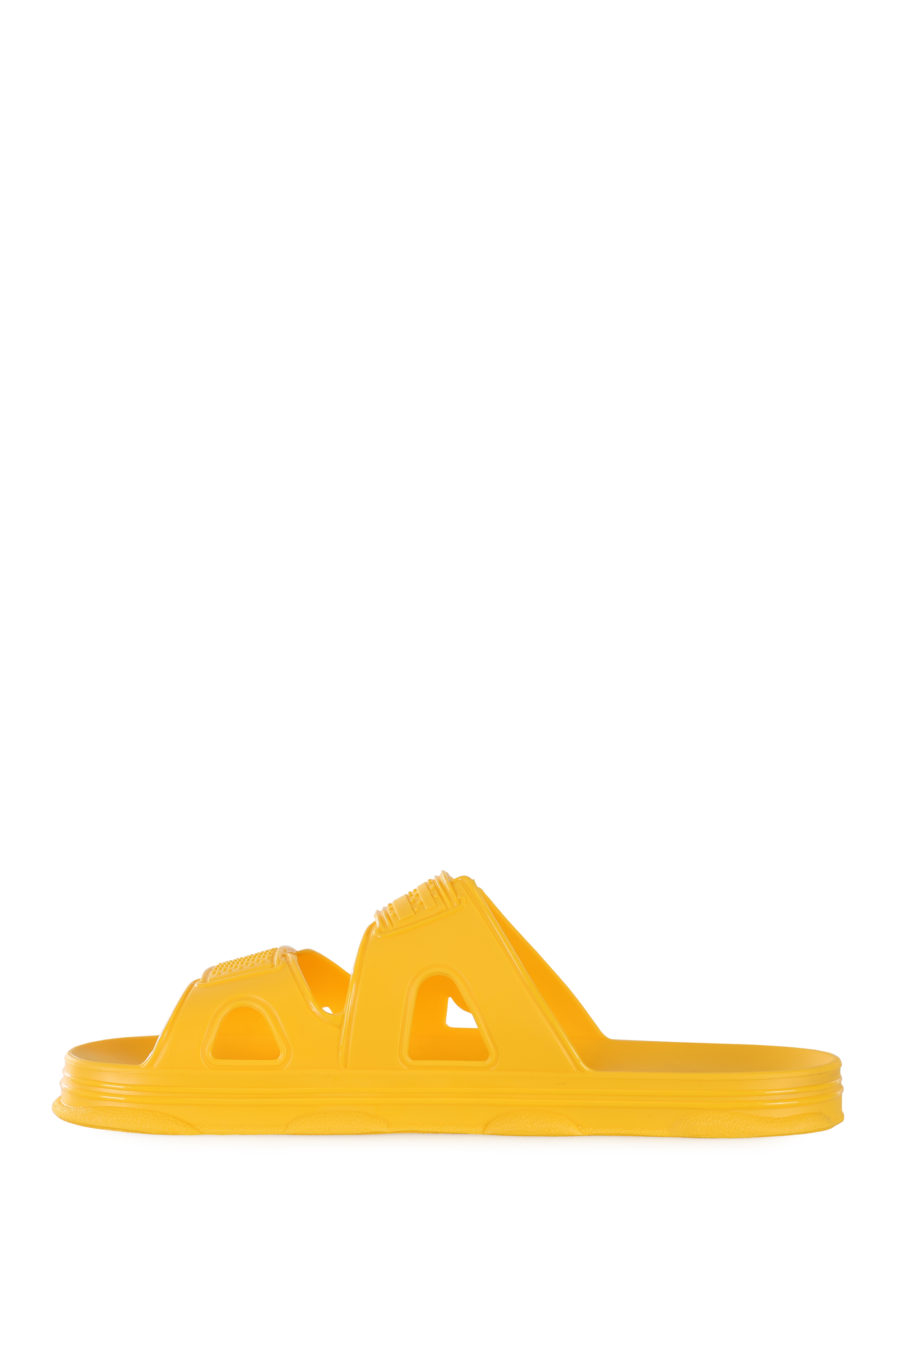 Chanclas amarillas de goma con logo blanco - IMG 1687